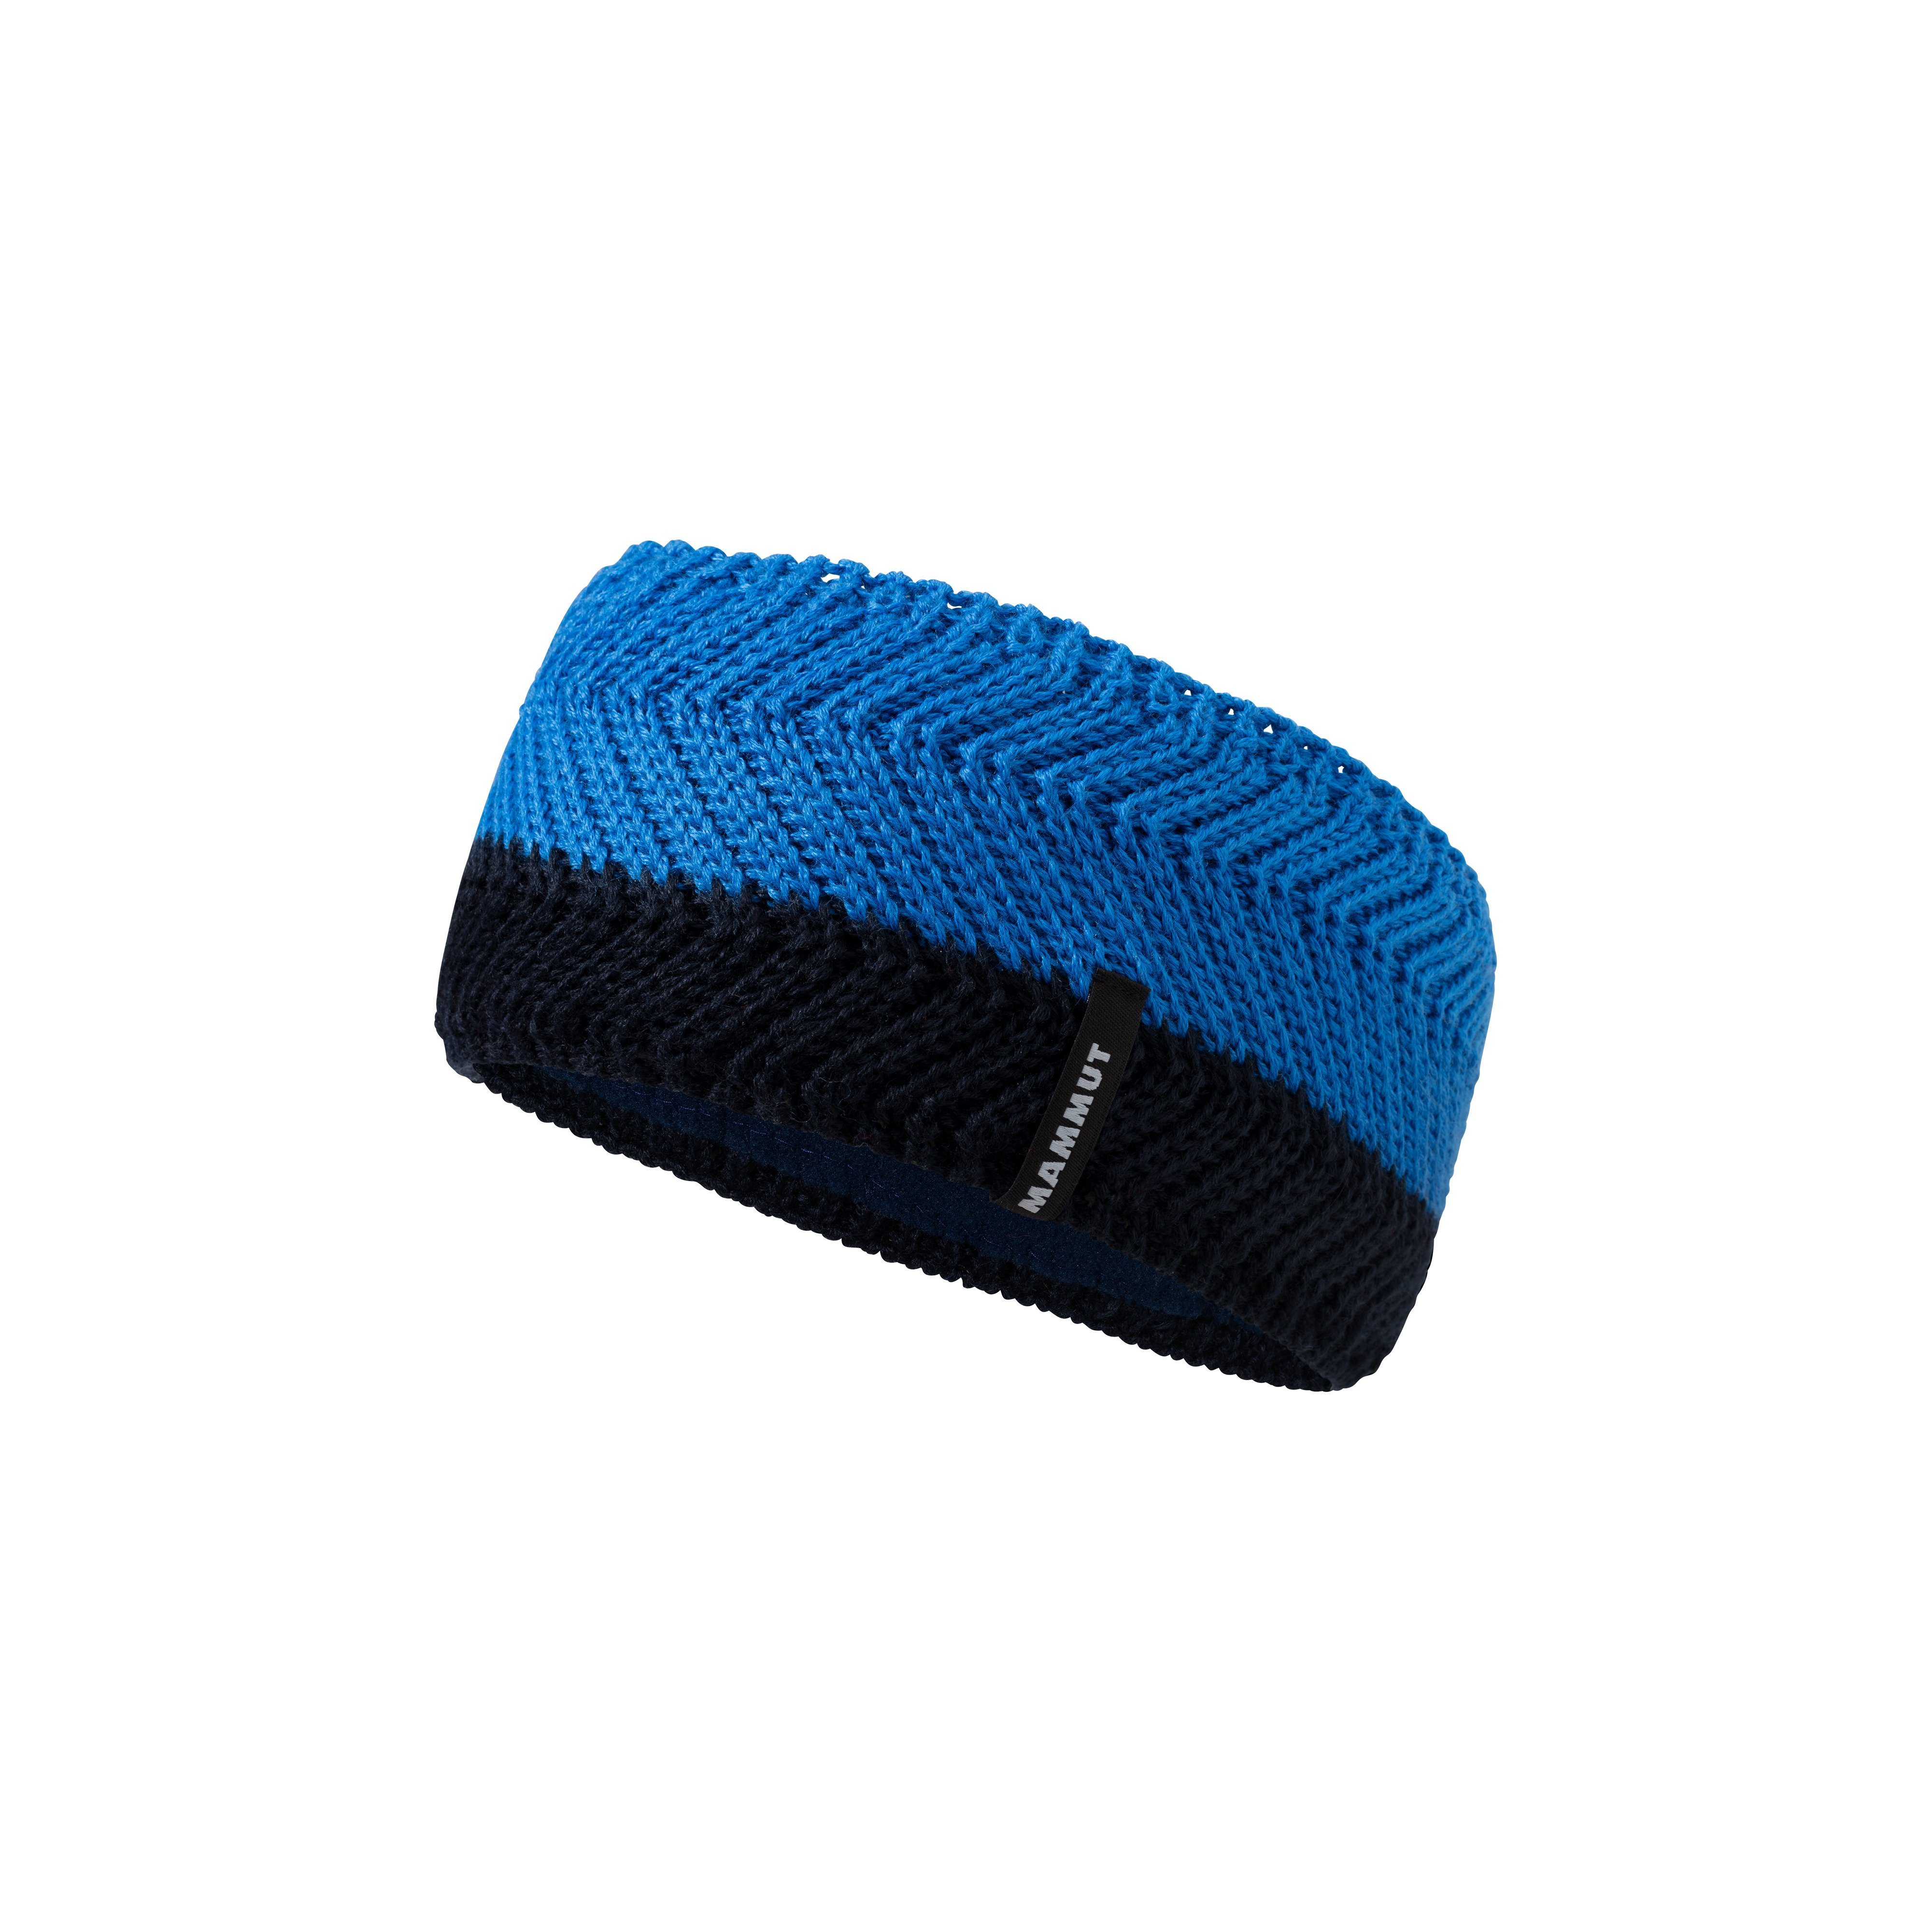 La Liste Headband - marine-ice, one size product image